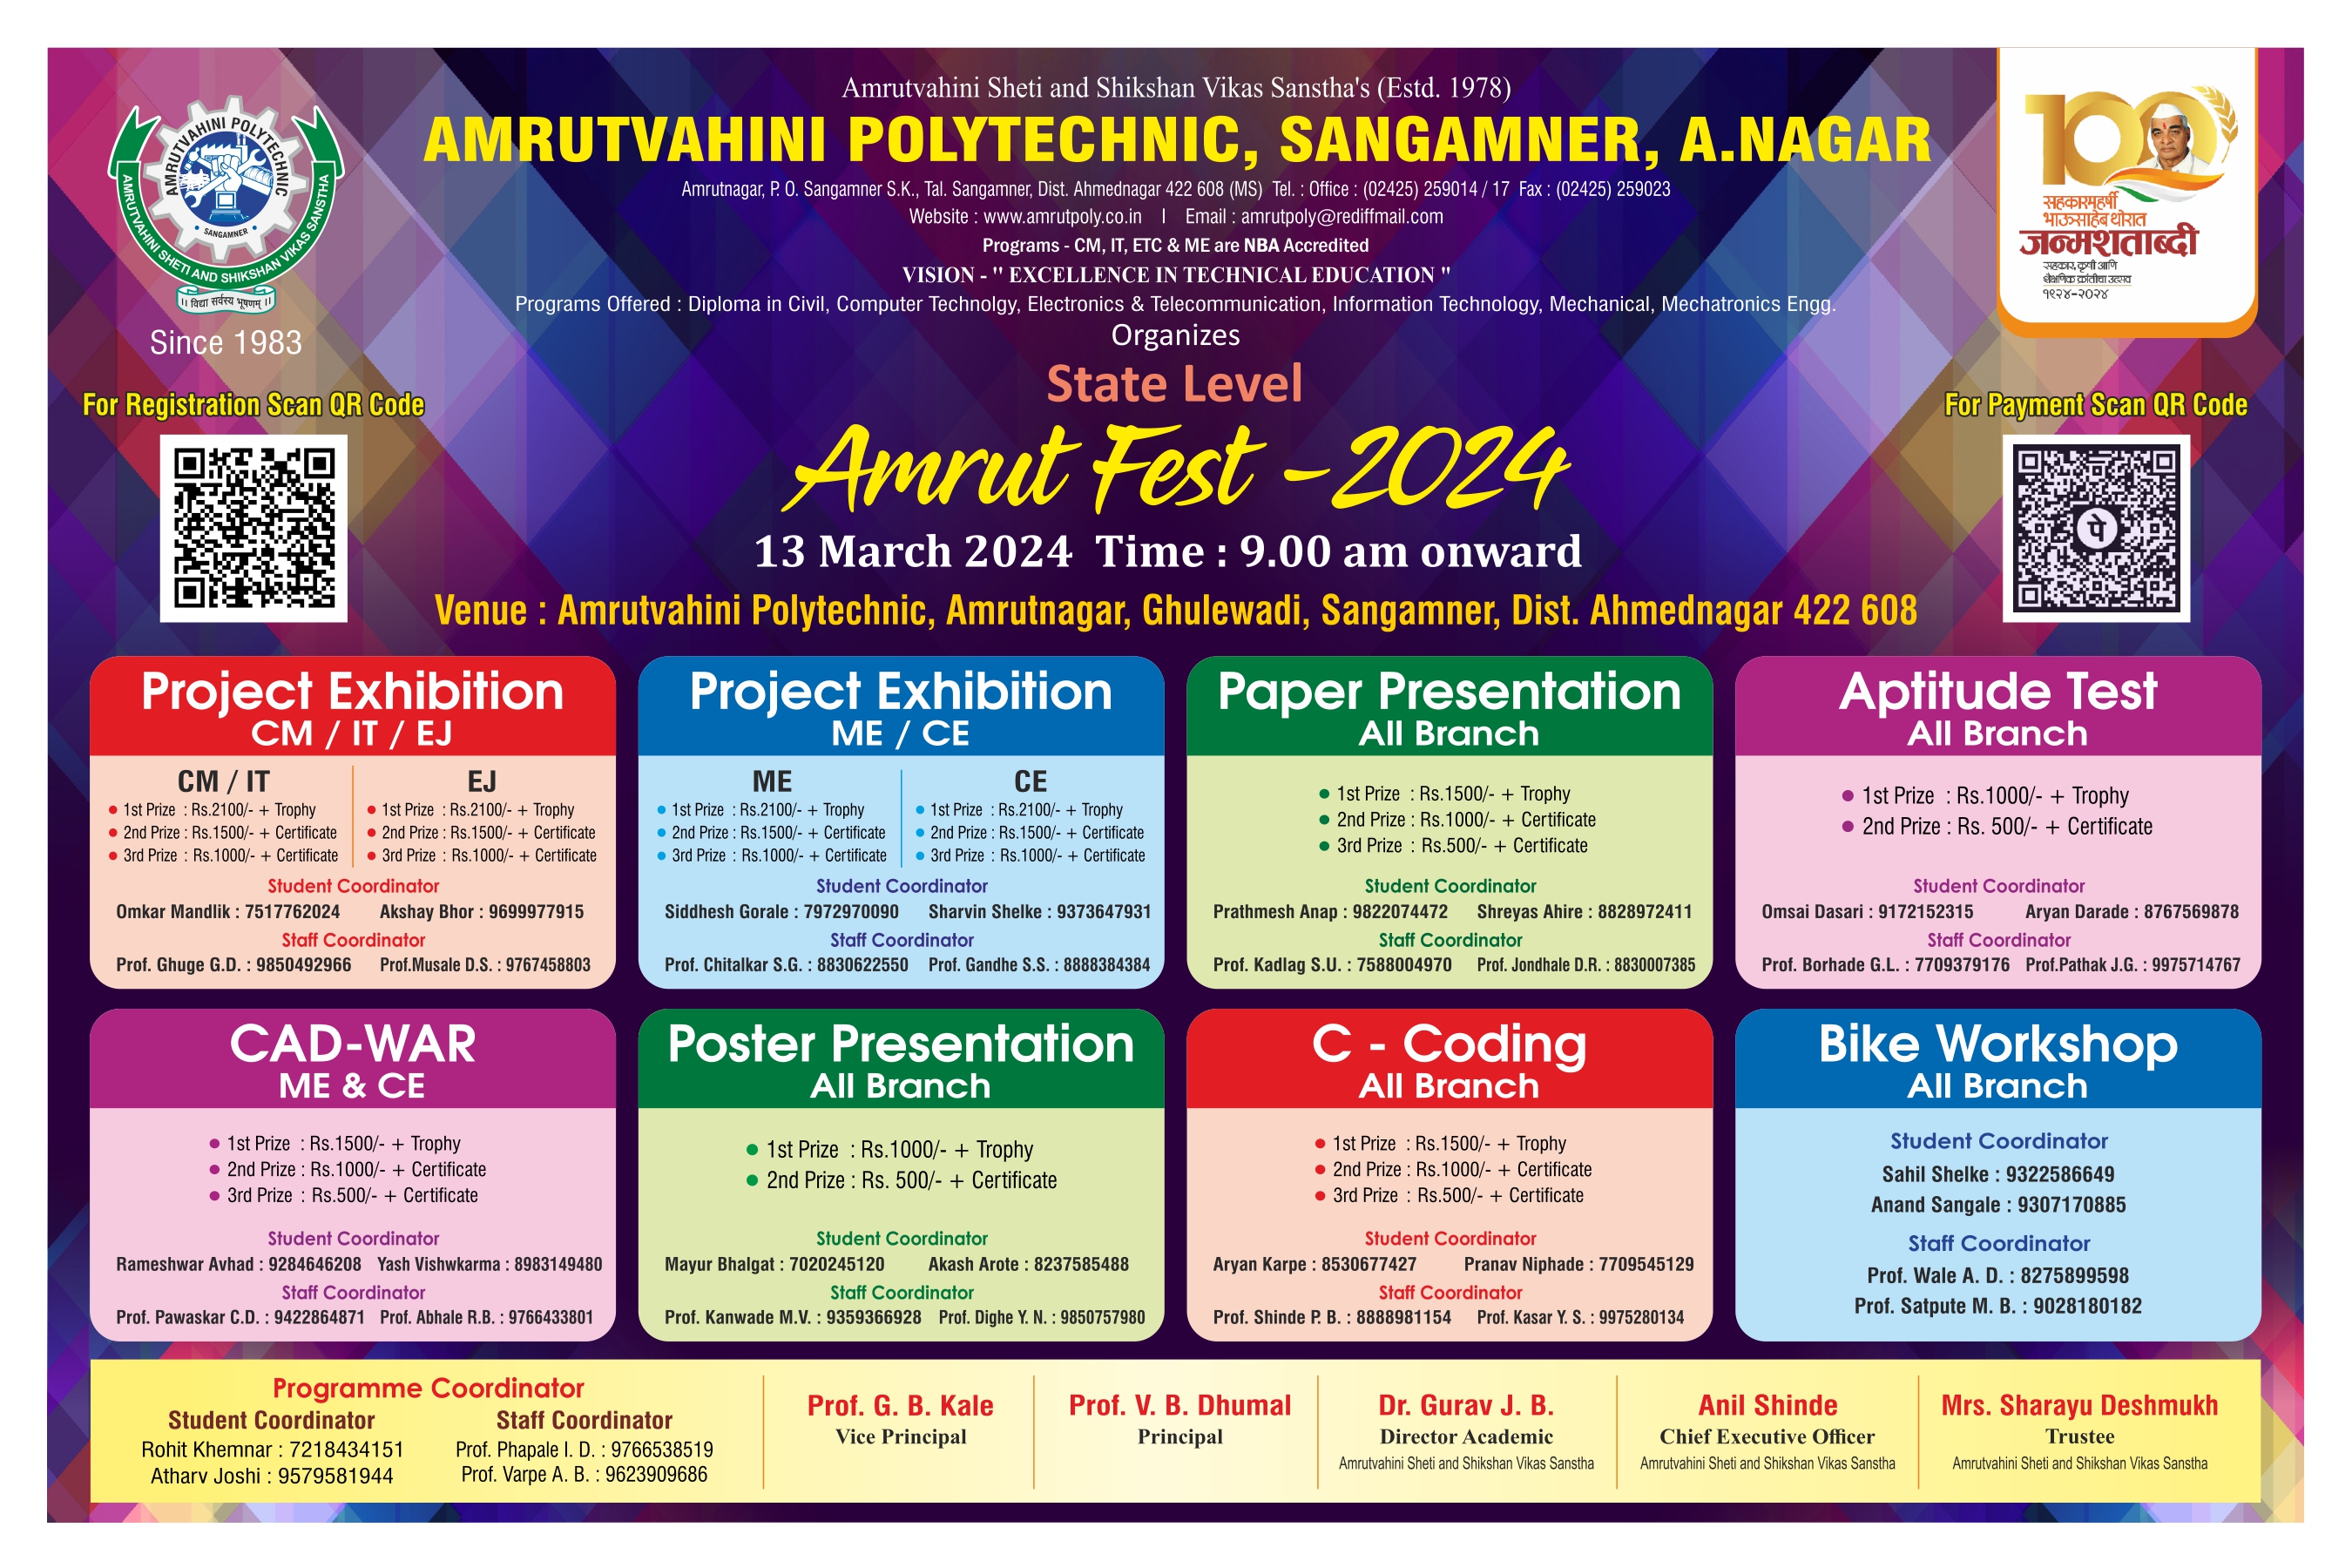 images/event/Amrut Fest final